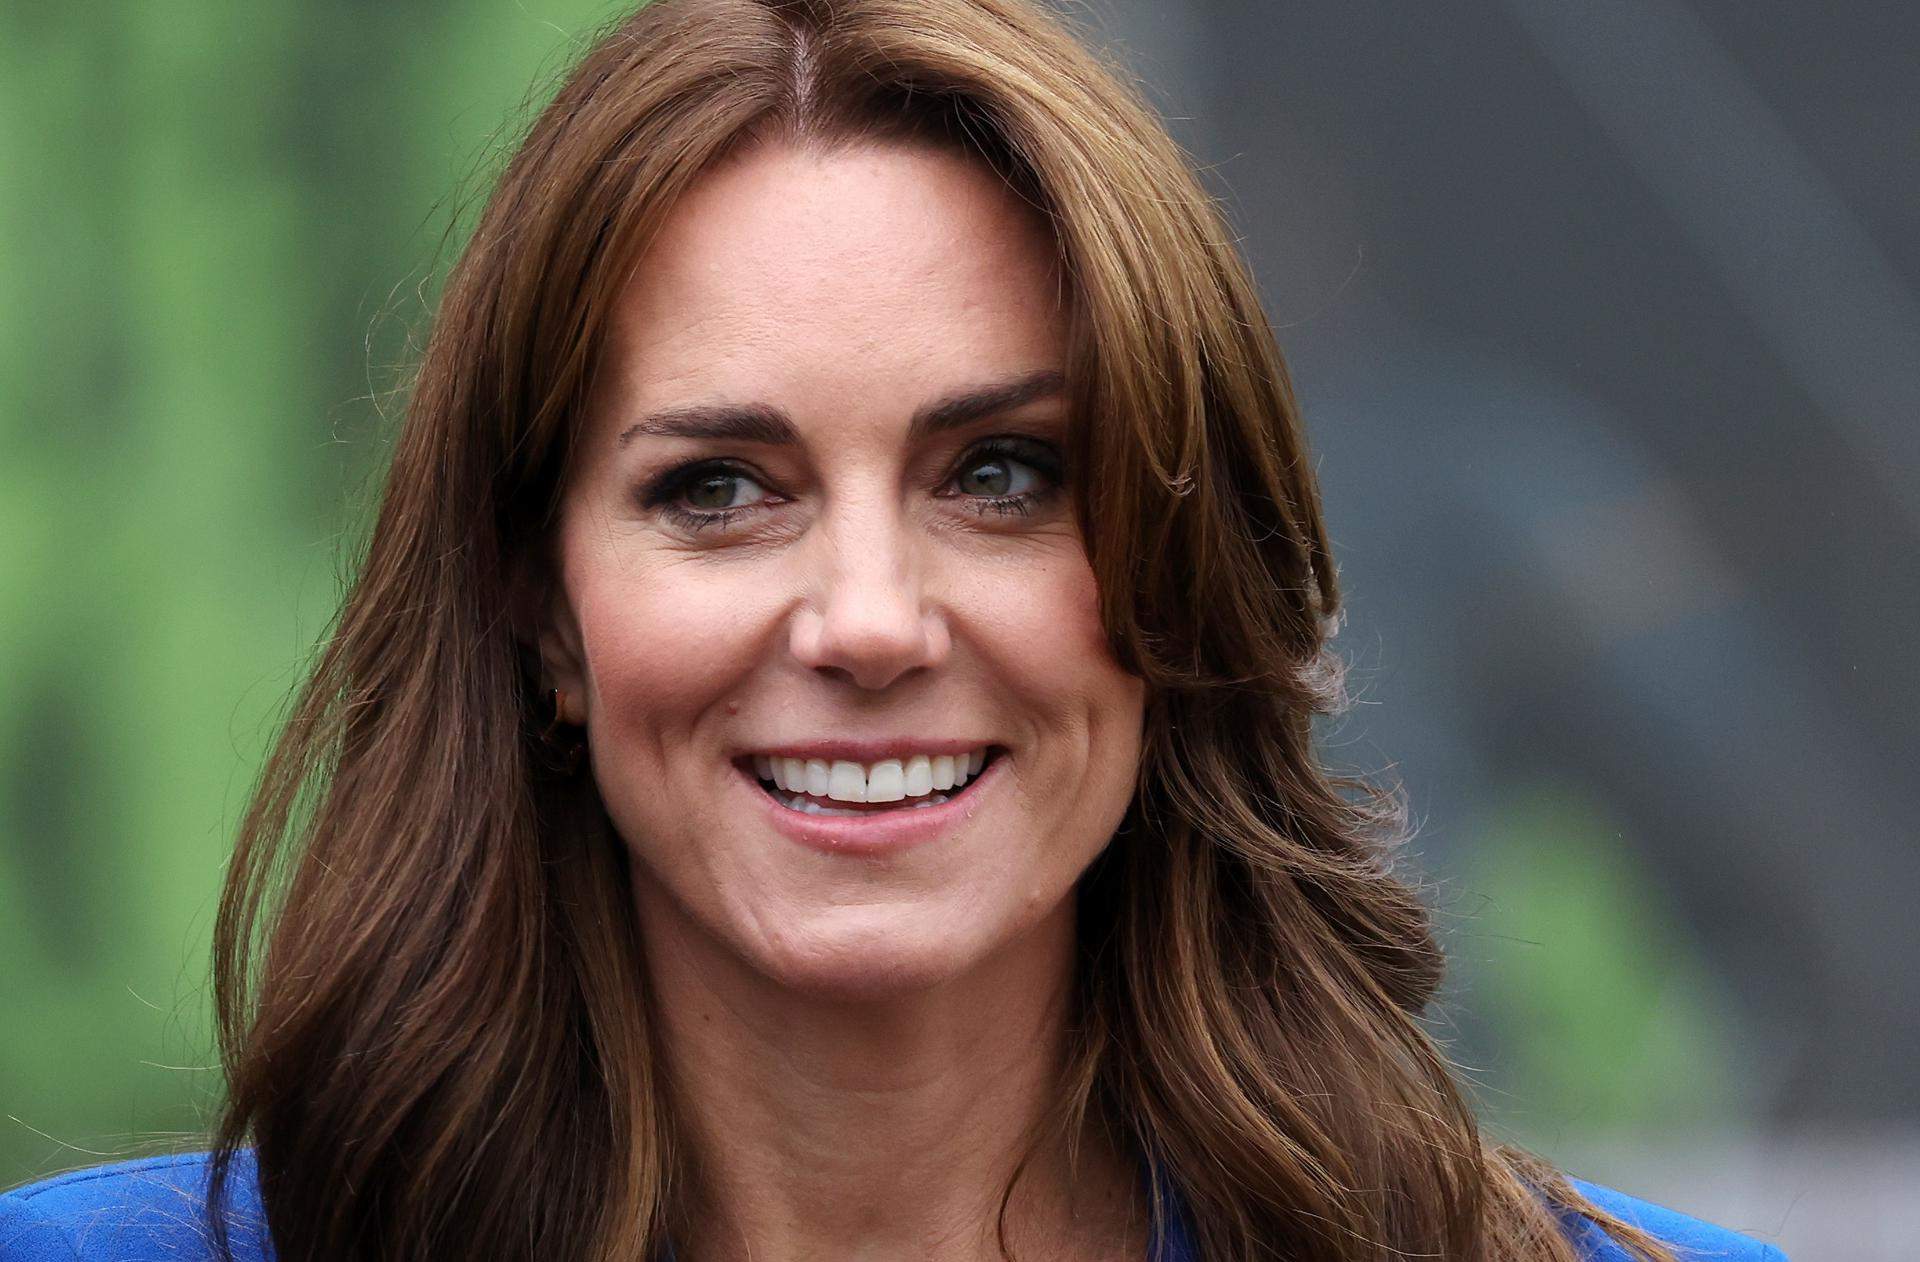 Tres meses de teorías de la conspiración sobre Kate Middleton alimentadas por su ausencia